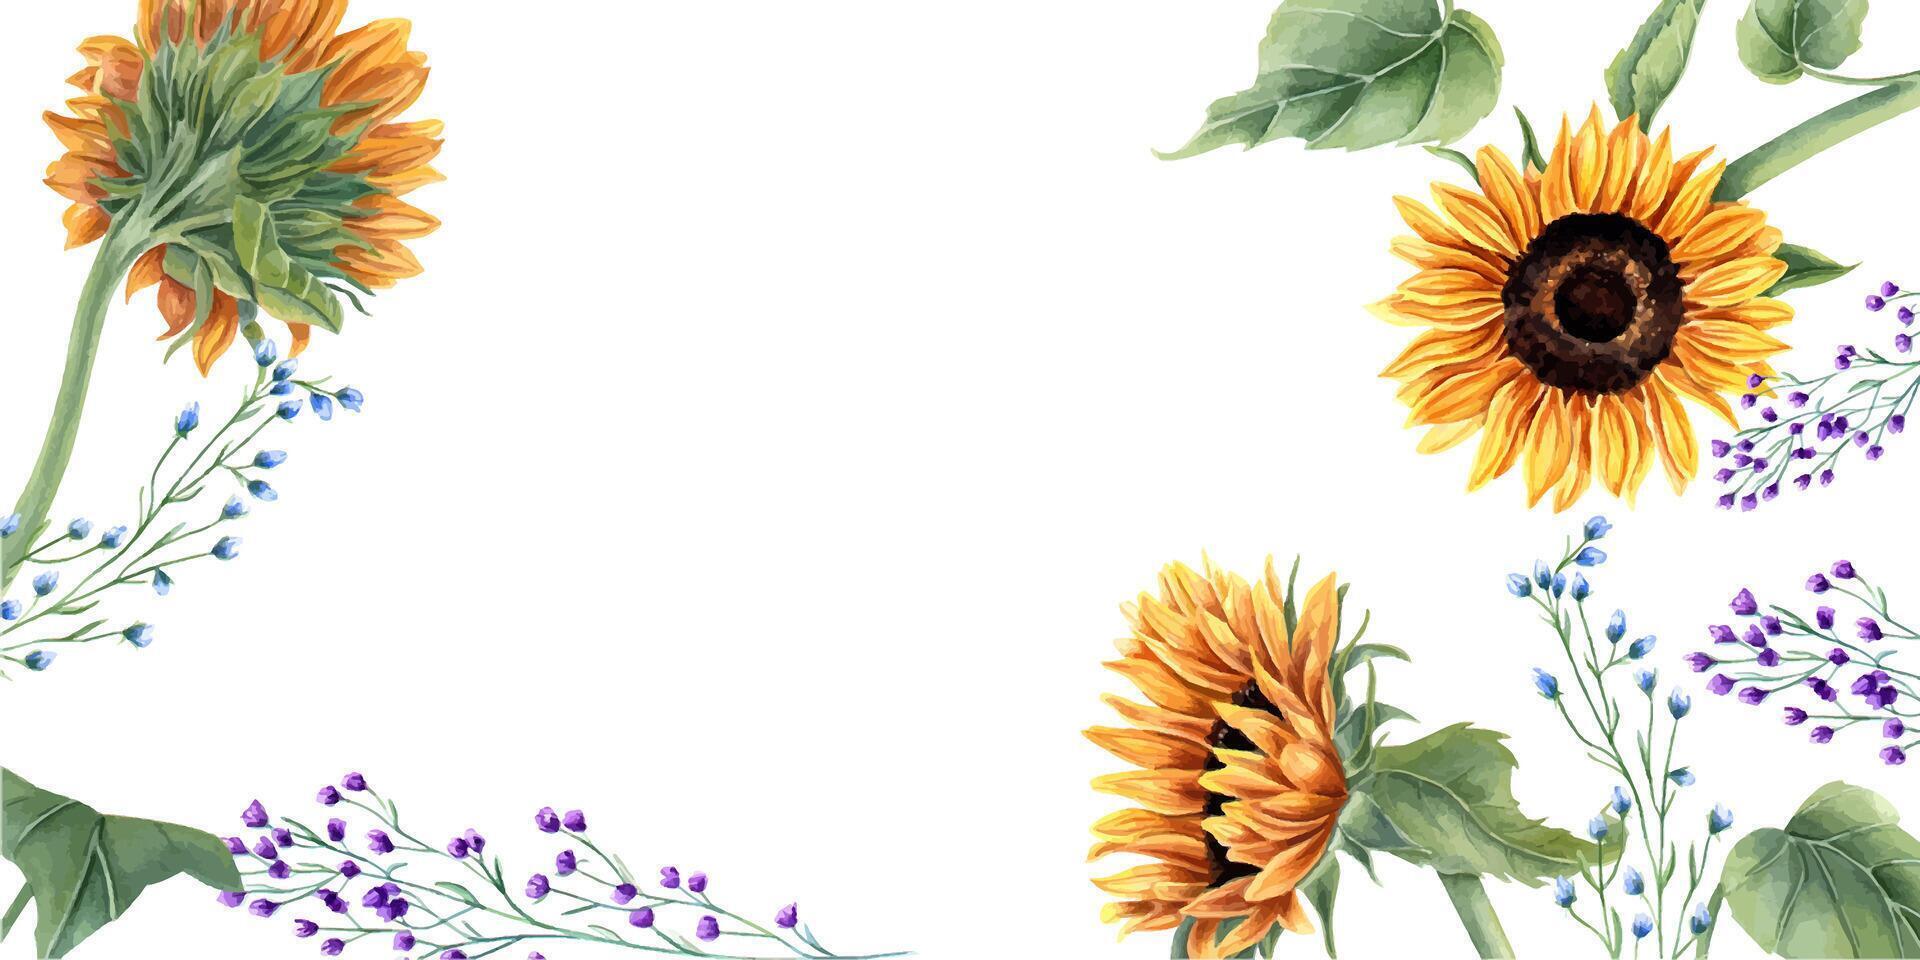 girasoles y resumen salvaje plantas. azul, naranja amarillo flores floral verano composición con Copiar espacio para texto. acuarela ilustración para Boda plantillas, cumpleaños saludos vector